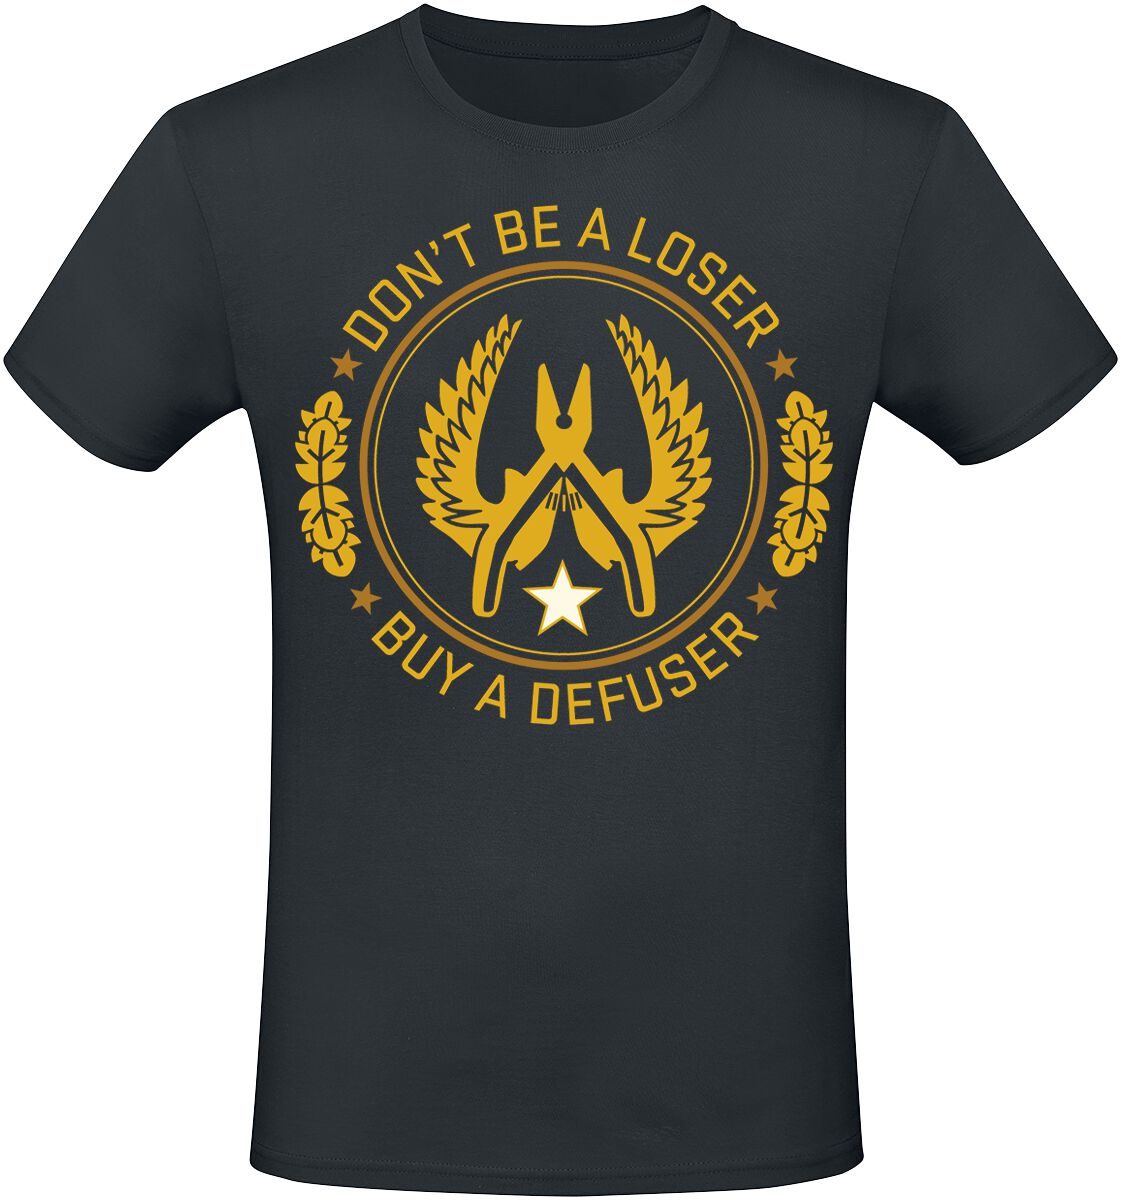 Counter-Strike - Gaming T-Shirt - 2 - Defuser - S bis XXL - für Männer - Größe S - schwarz  - EMP exklusives Merchandise! von Counter-Strike